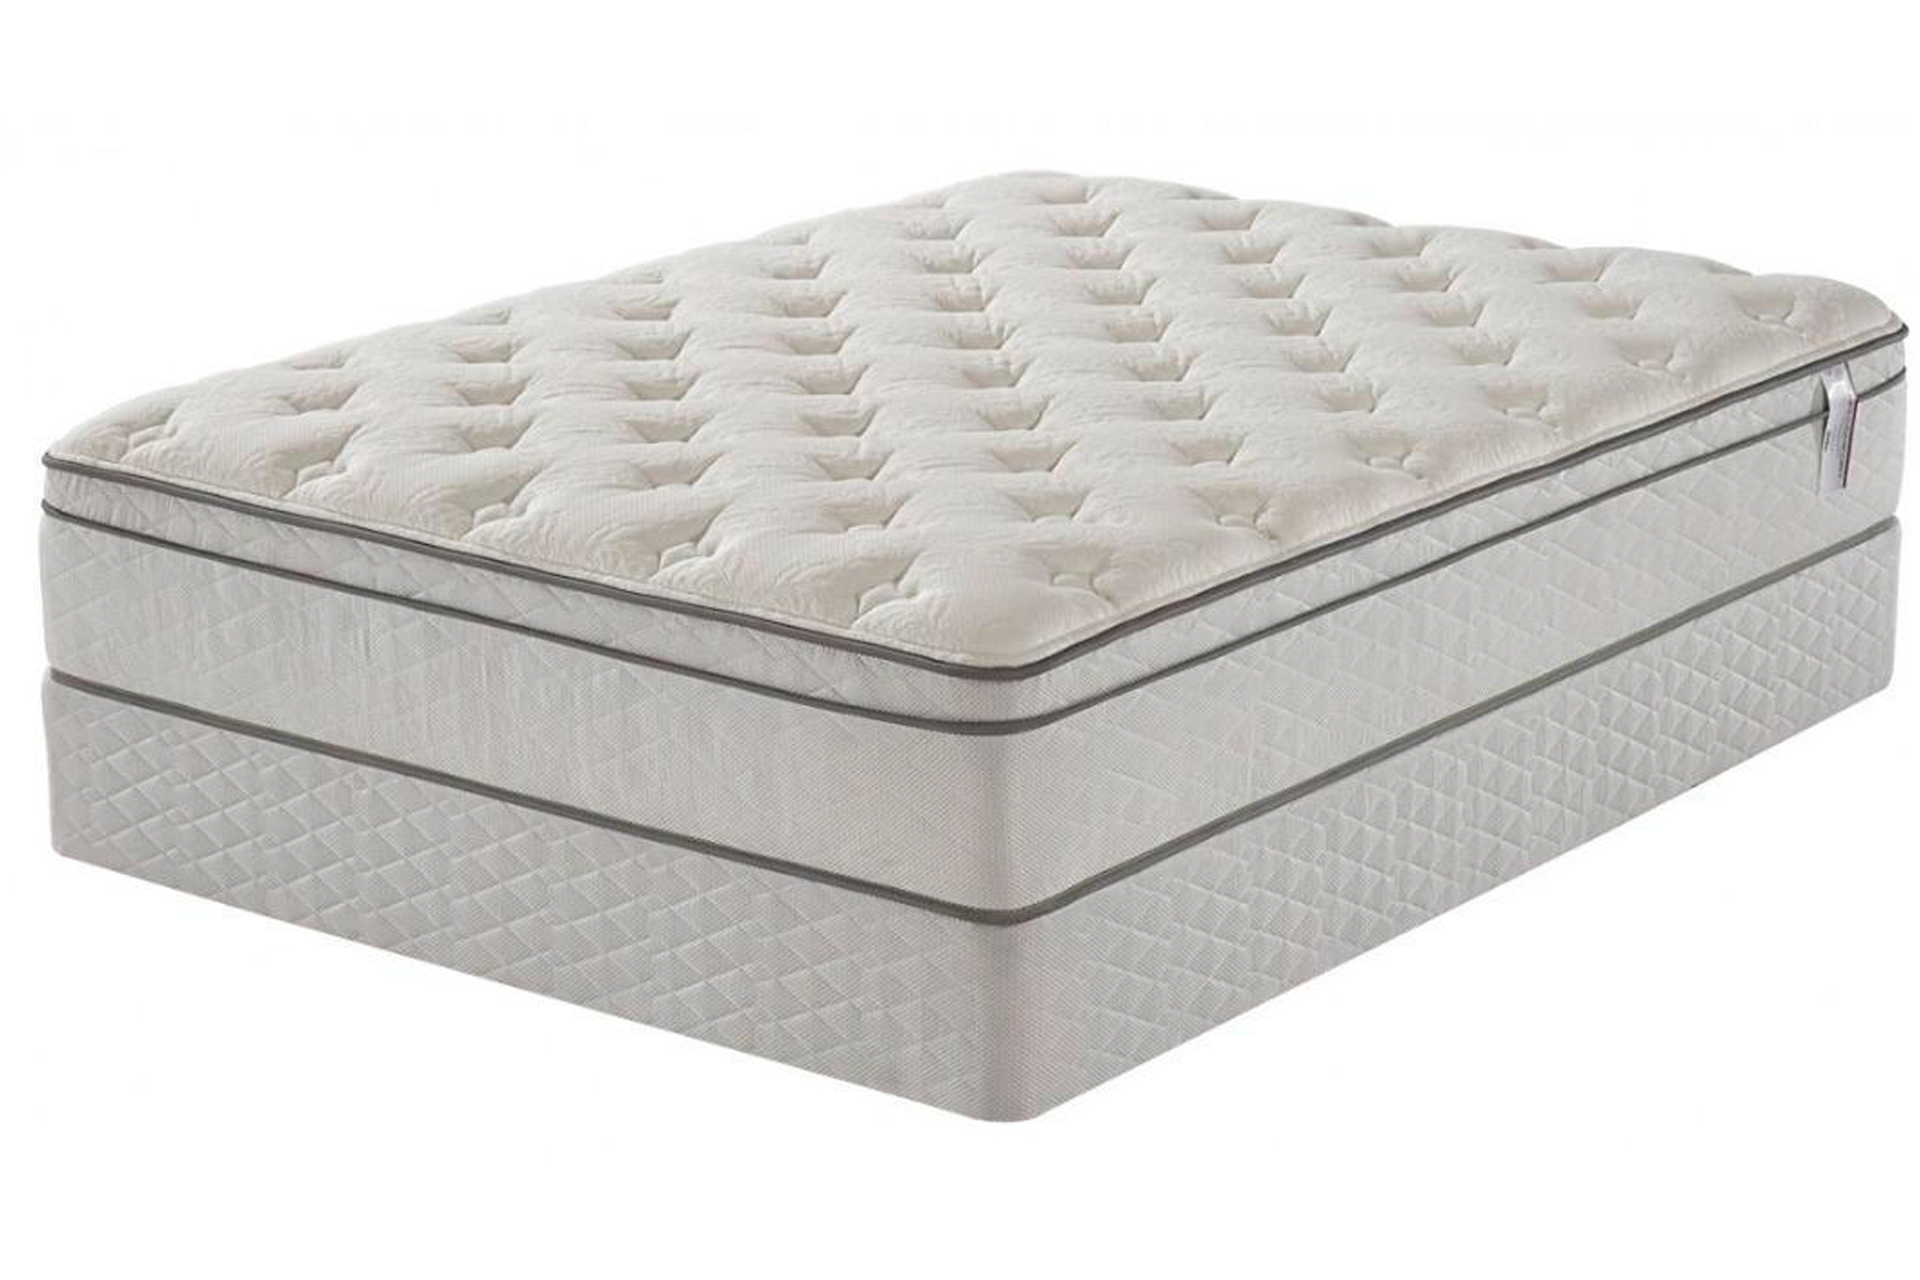 queen size pillow top mattress sears